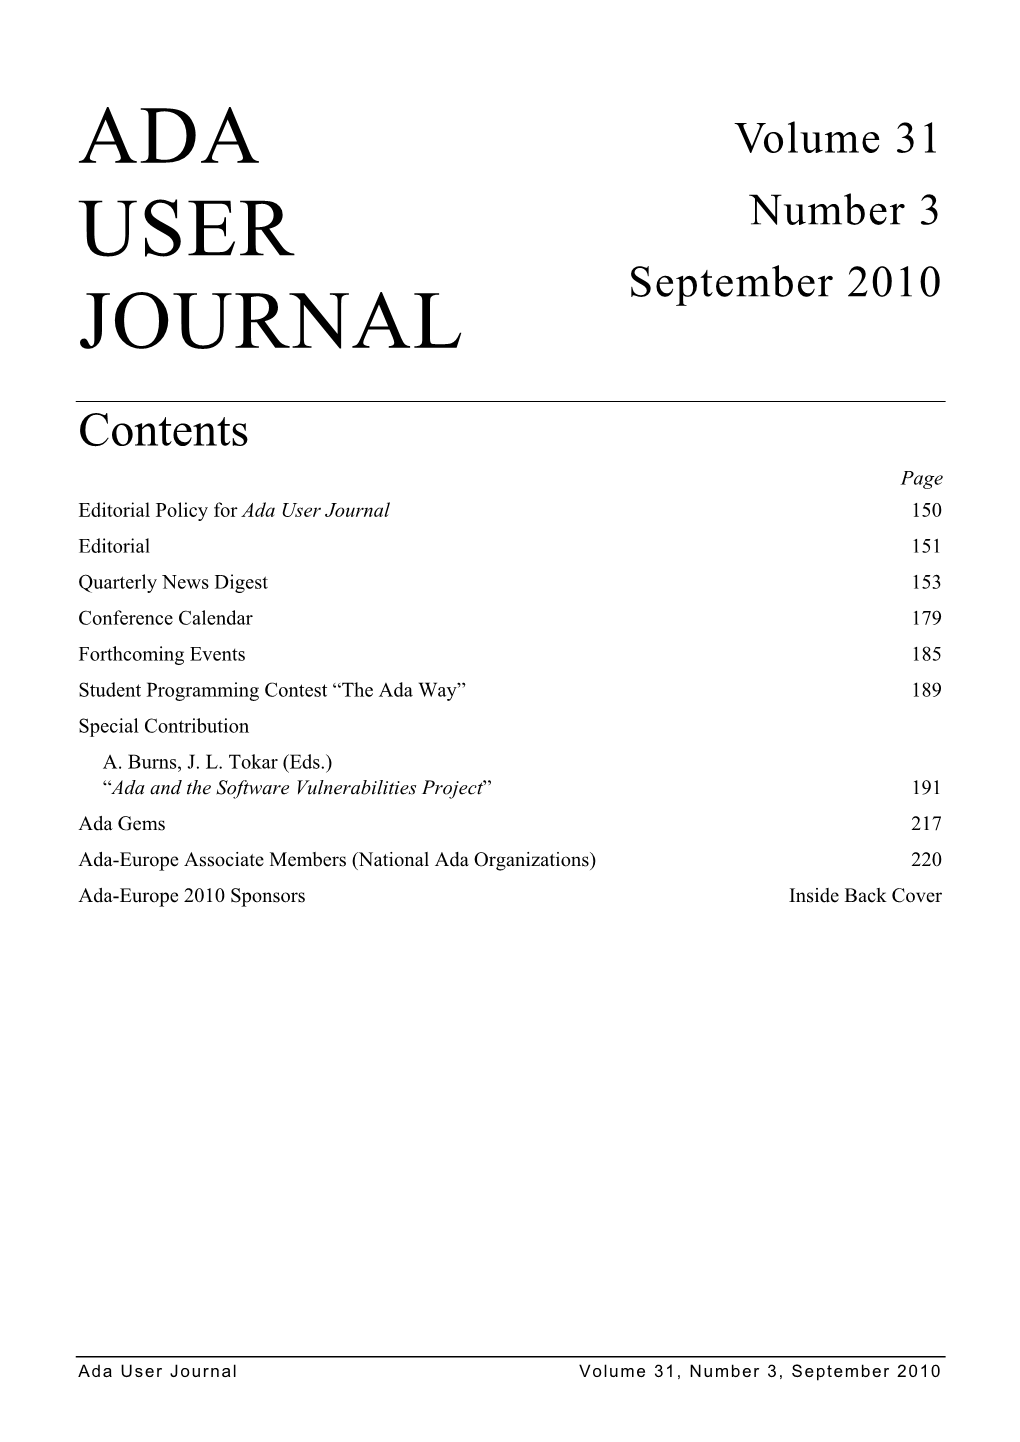 Volume 31 Number 3 September 2010